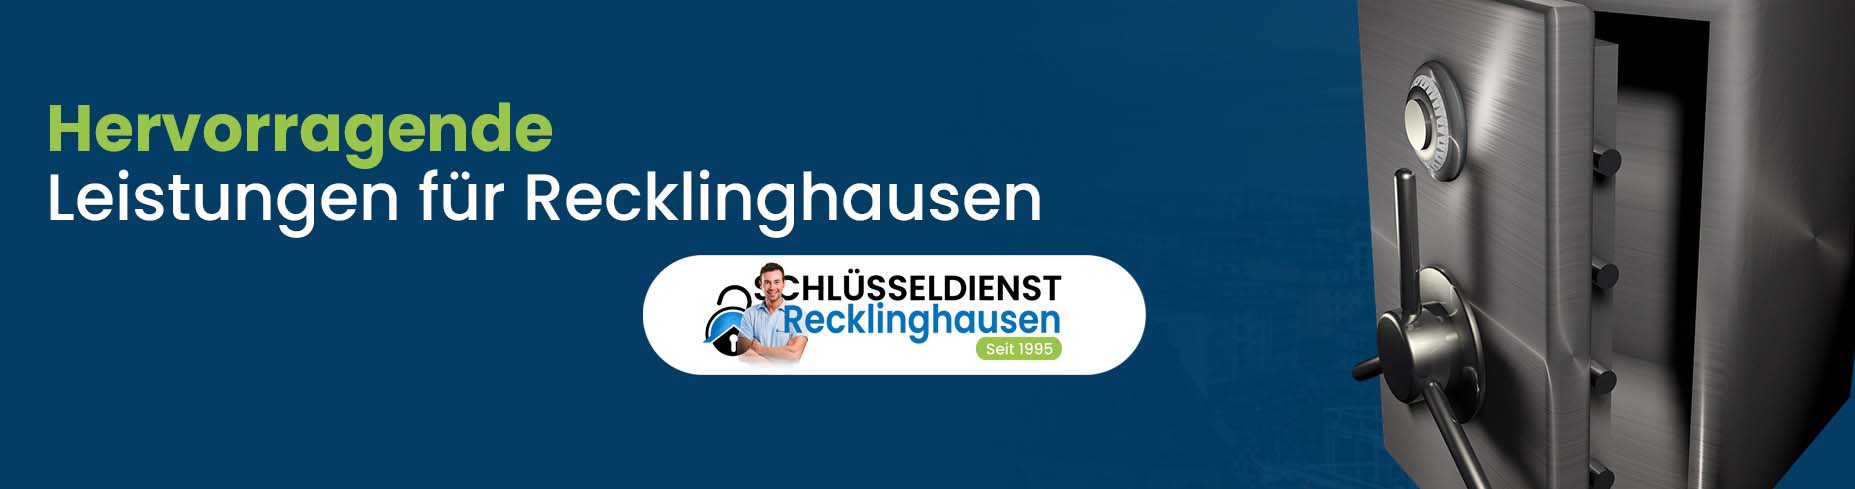 Hervorragende Leistungen für Recklinghausen